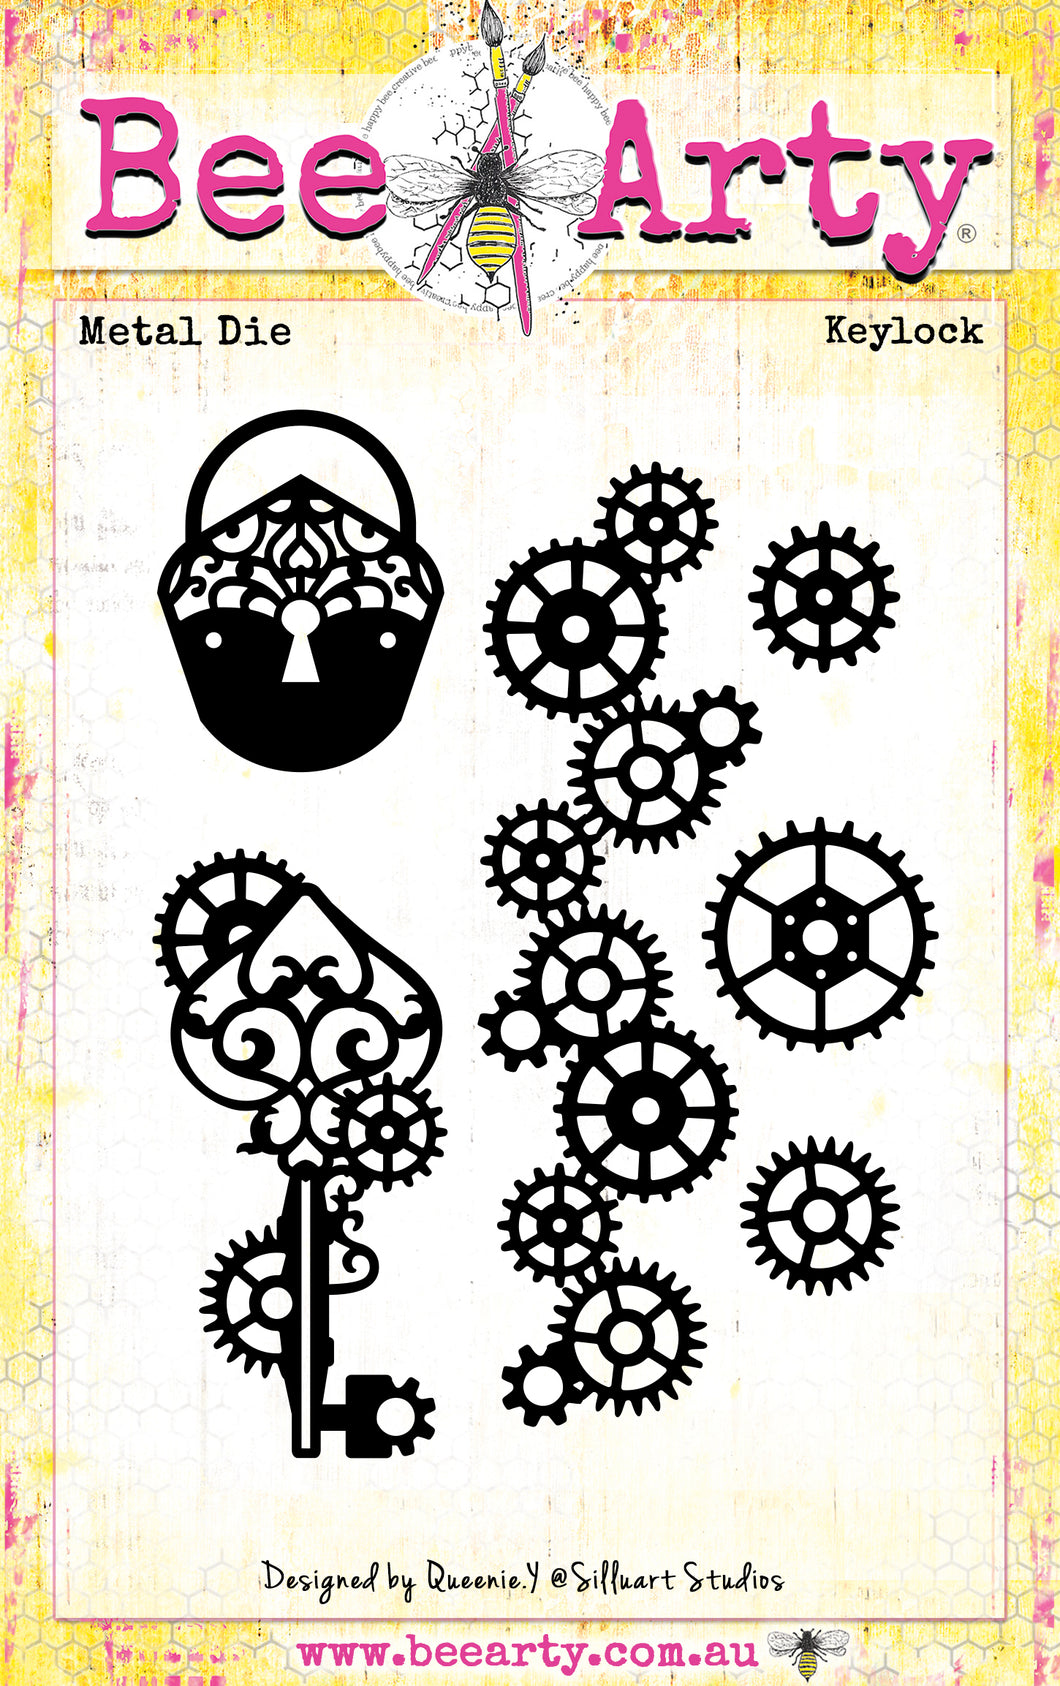 Keylock - Metal Die